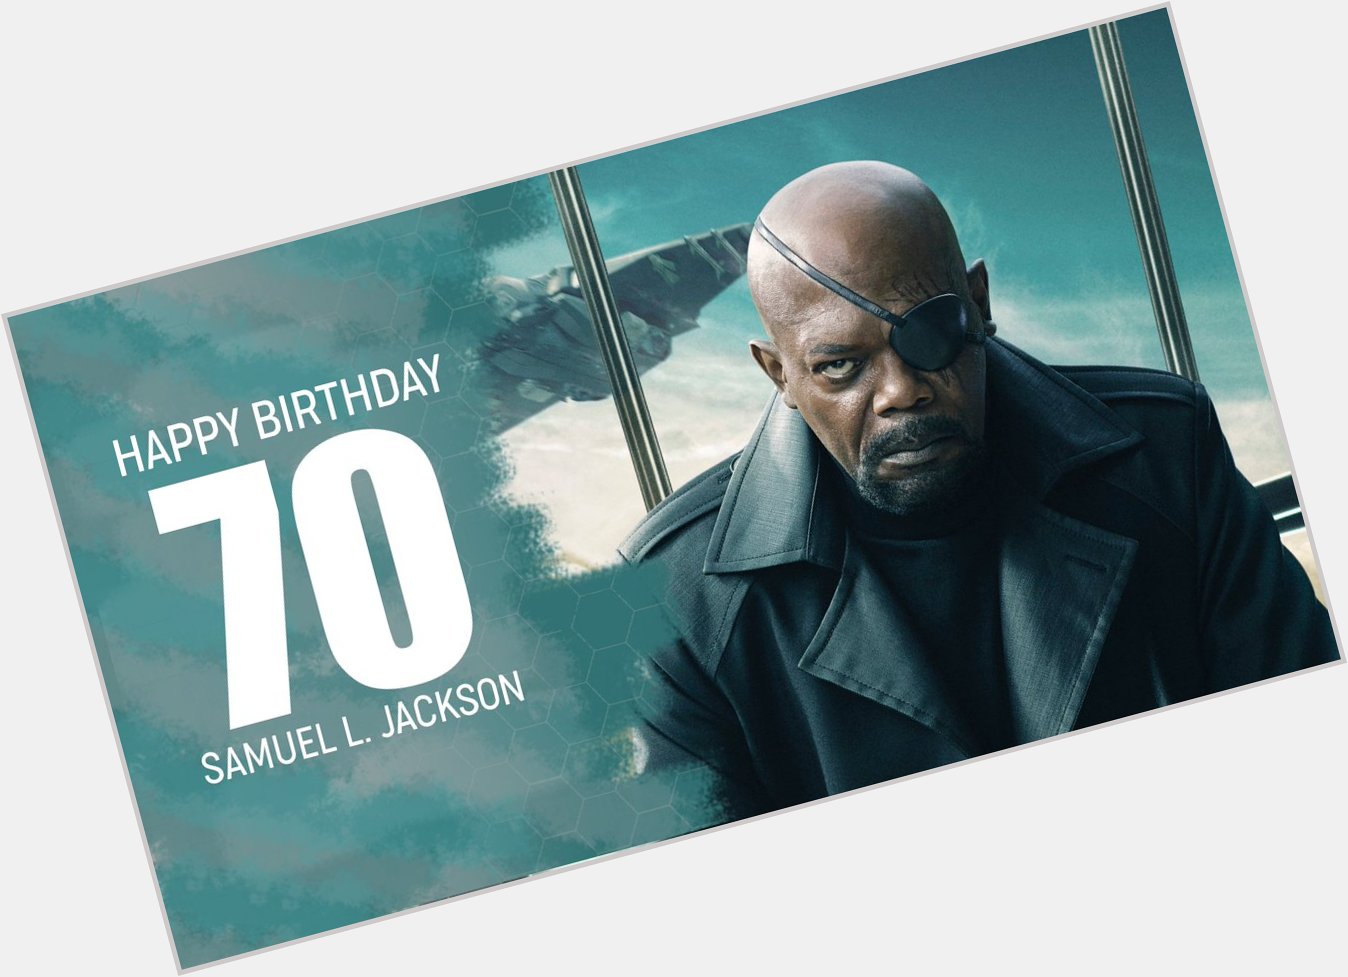 Der Schauspieler von Nick Fury,
SAMUEL L. JACKSON
wurde am 21.12. 70 Jahre alt

Happy Birthday ! 